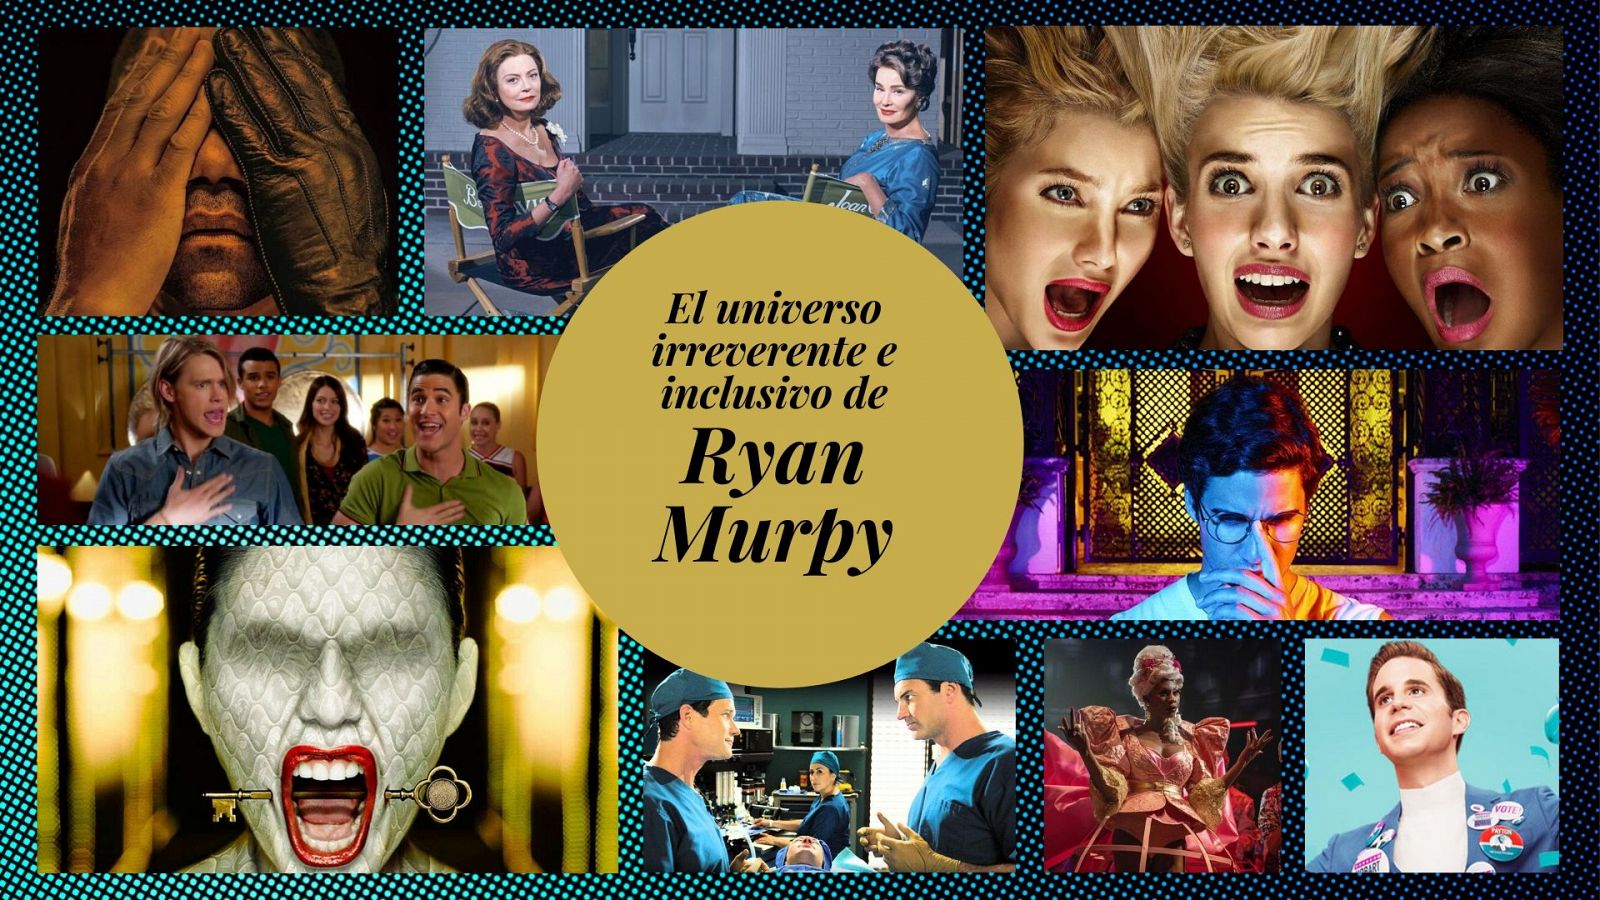 Las producciones de Ryan Murphy, a fondo: desde 'Nip/Tuck' hasta 'The politician'.